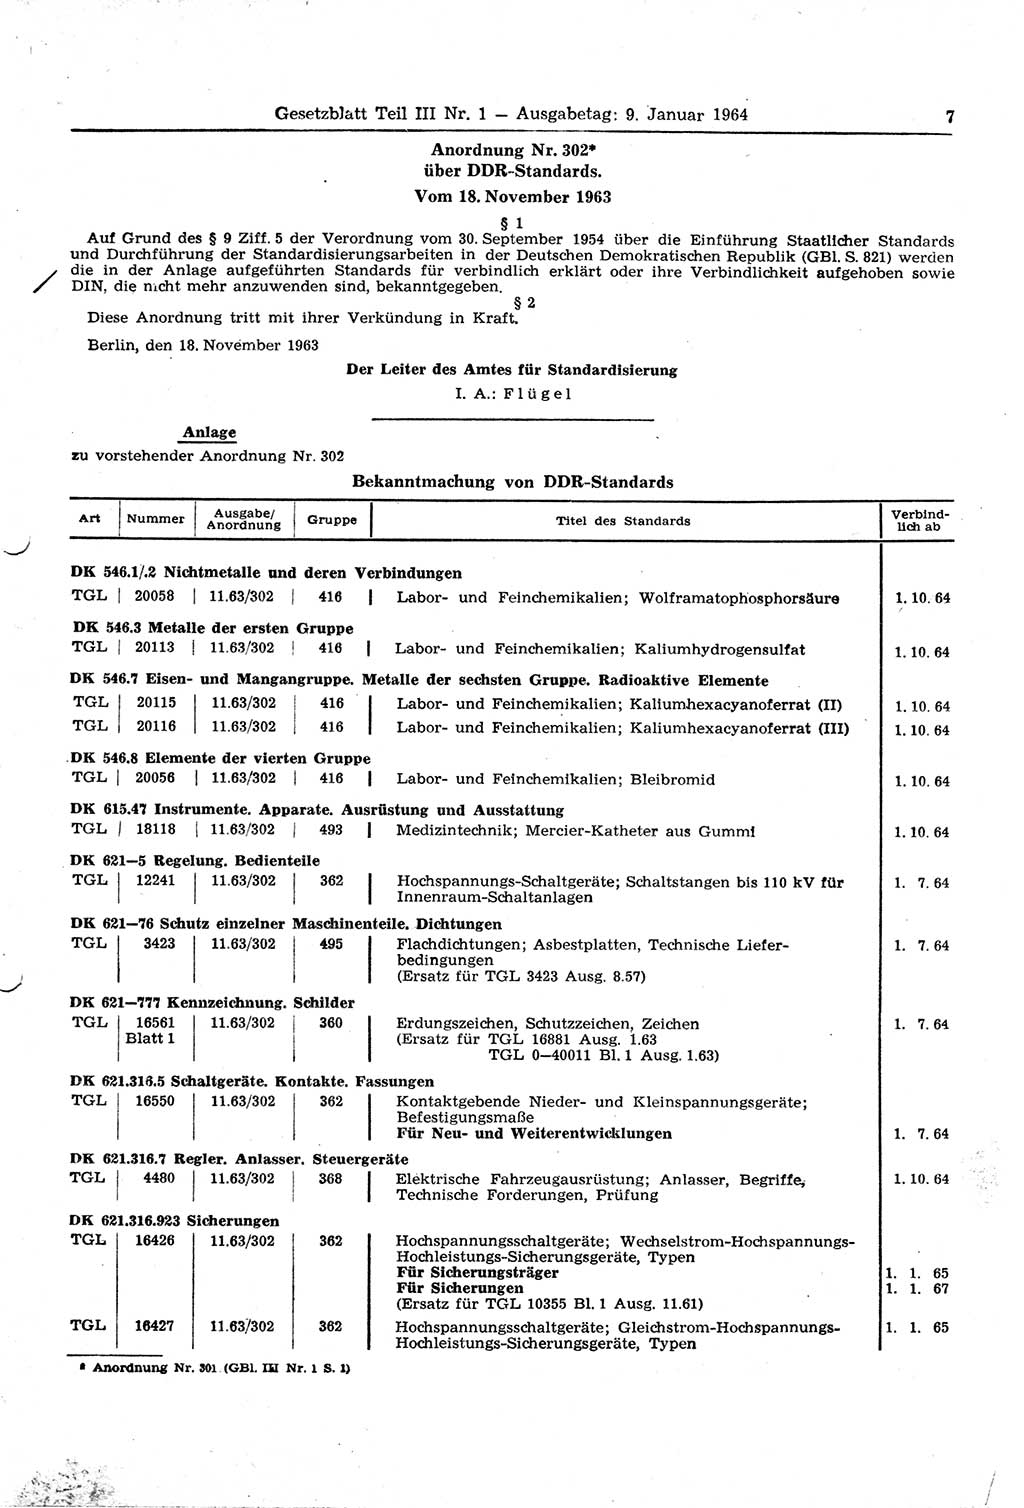 Gesetzblatt (GBl.) der Deutschen Demokratischen Republik (DDR) Teil ⅠⅠⅠ 1964, Seite 7 (GBl. DDR ⅠⅠⅠ 1964, S. 7)